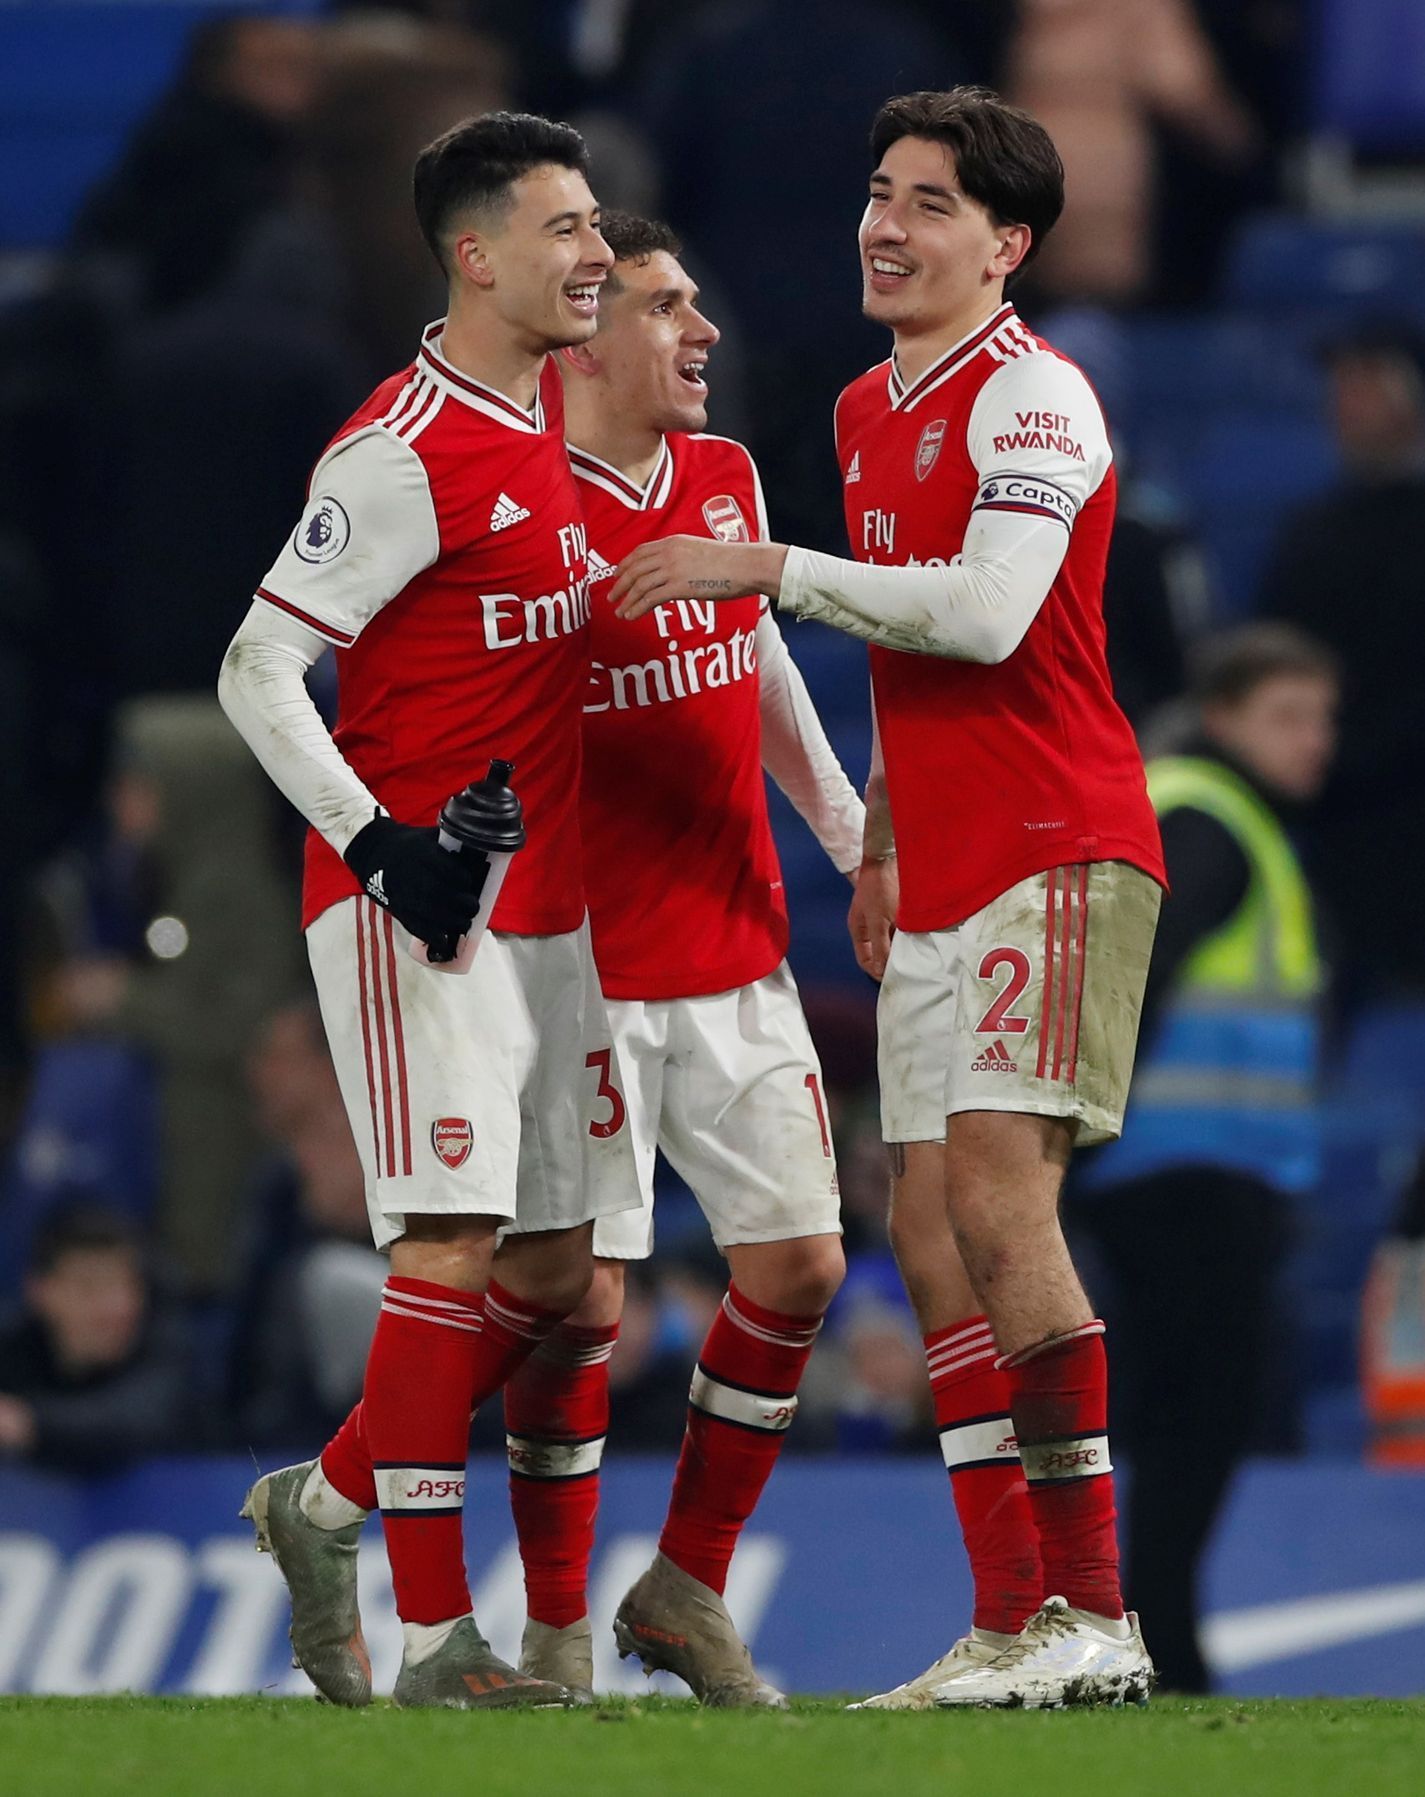 Anglická Premier League 2019/20, Chelsea - Arsenal: Hráči Arsenalu slaví zisk bodu